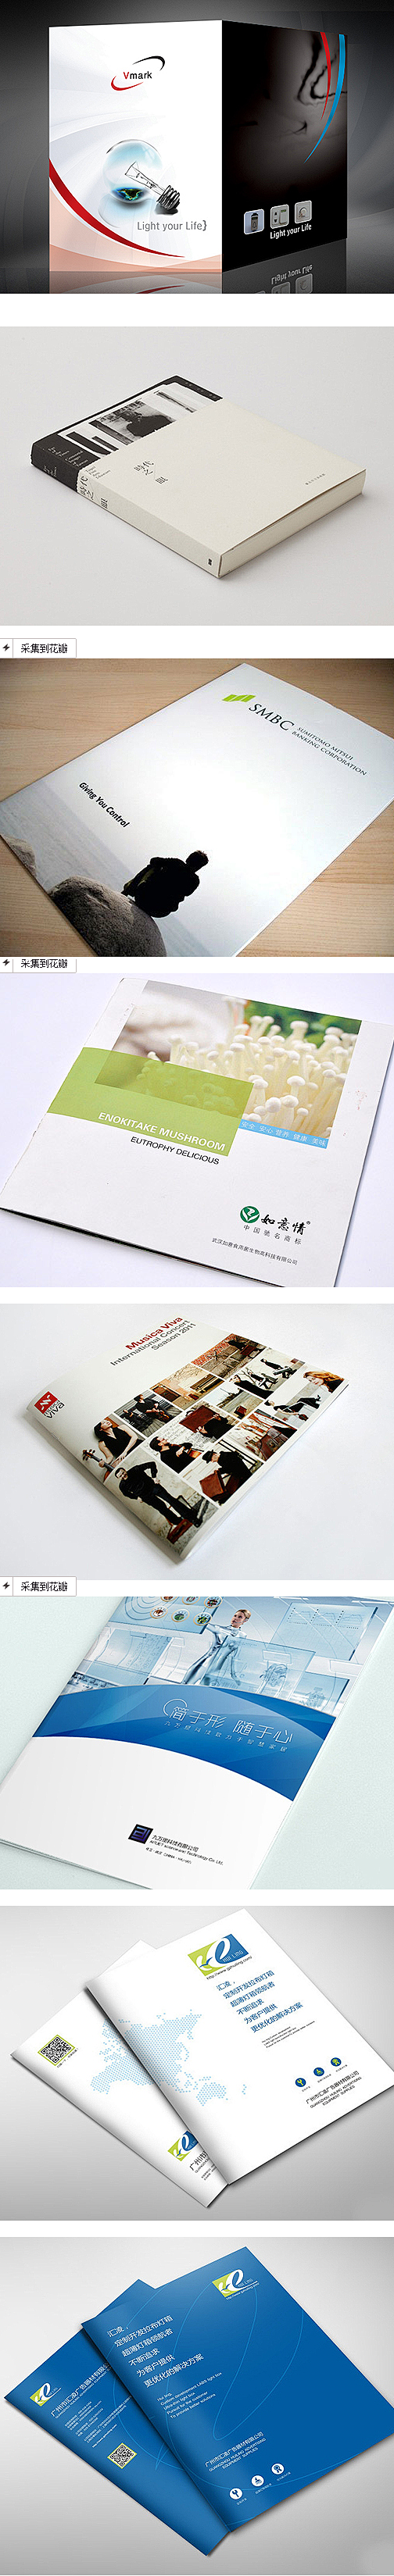 中国画册设计网 画册封面设计 封面板式设...